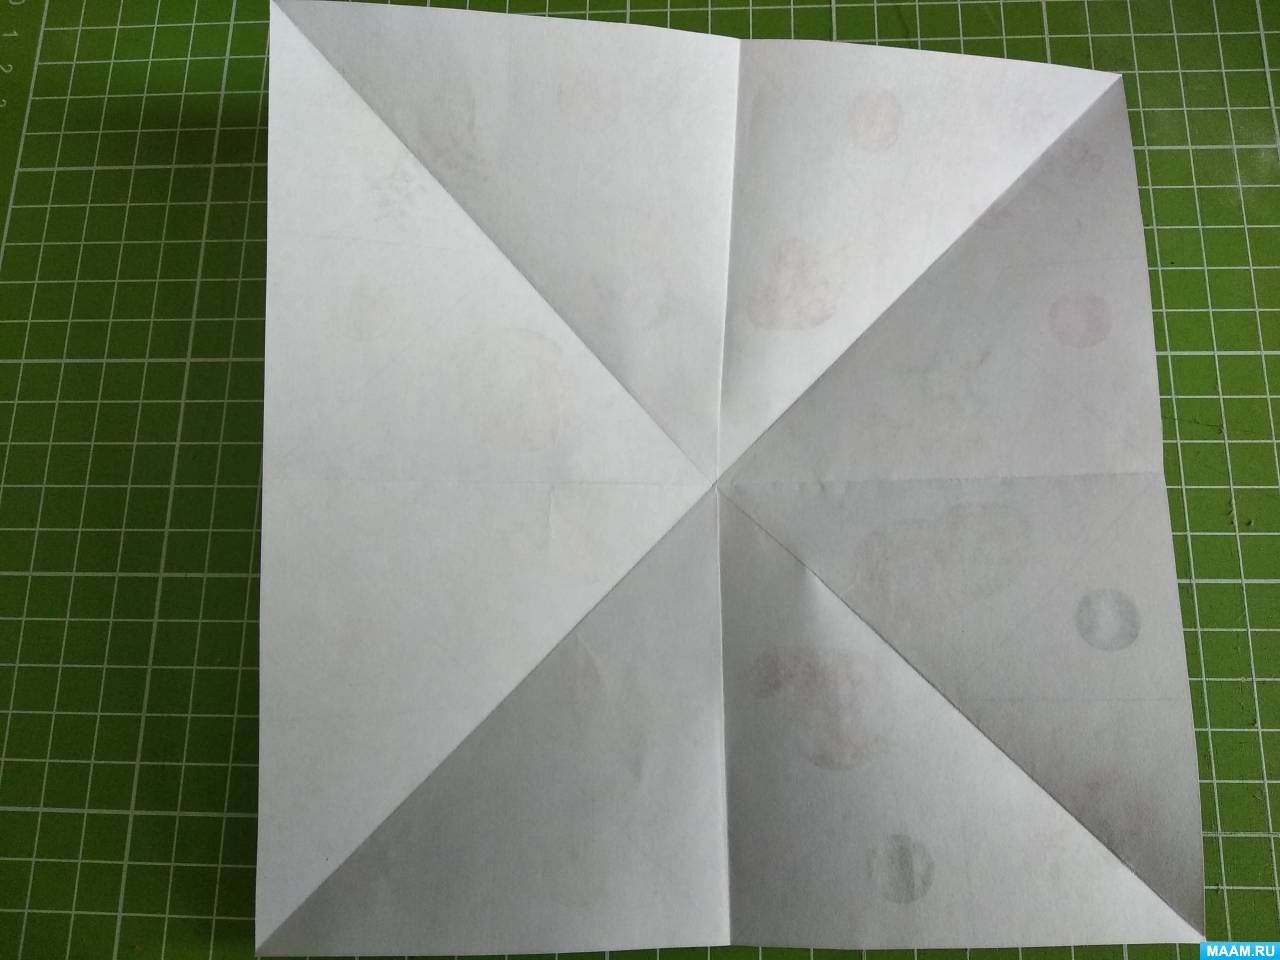 Детская гадалка-оригами с предсказаниями из бумаги